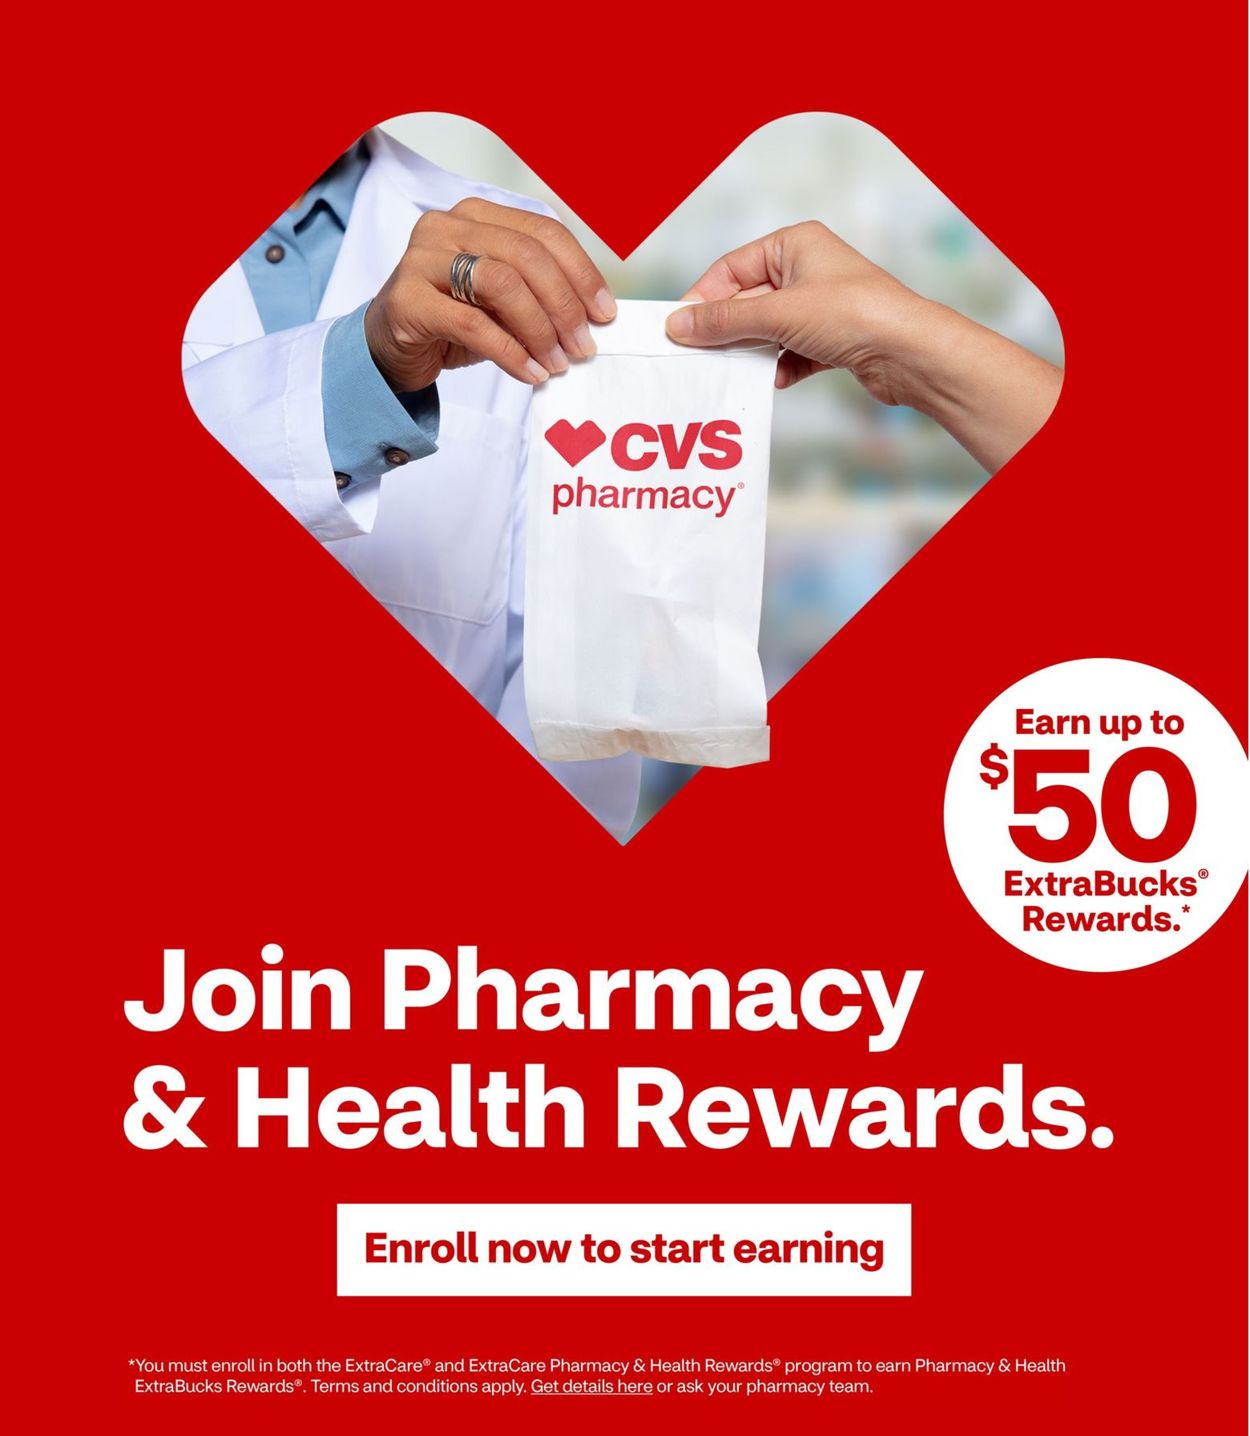 Catalogue CVS Pharmacy from 01/26/2020